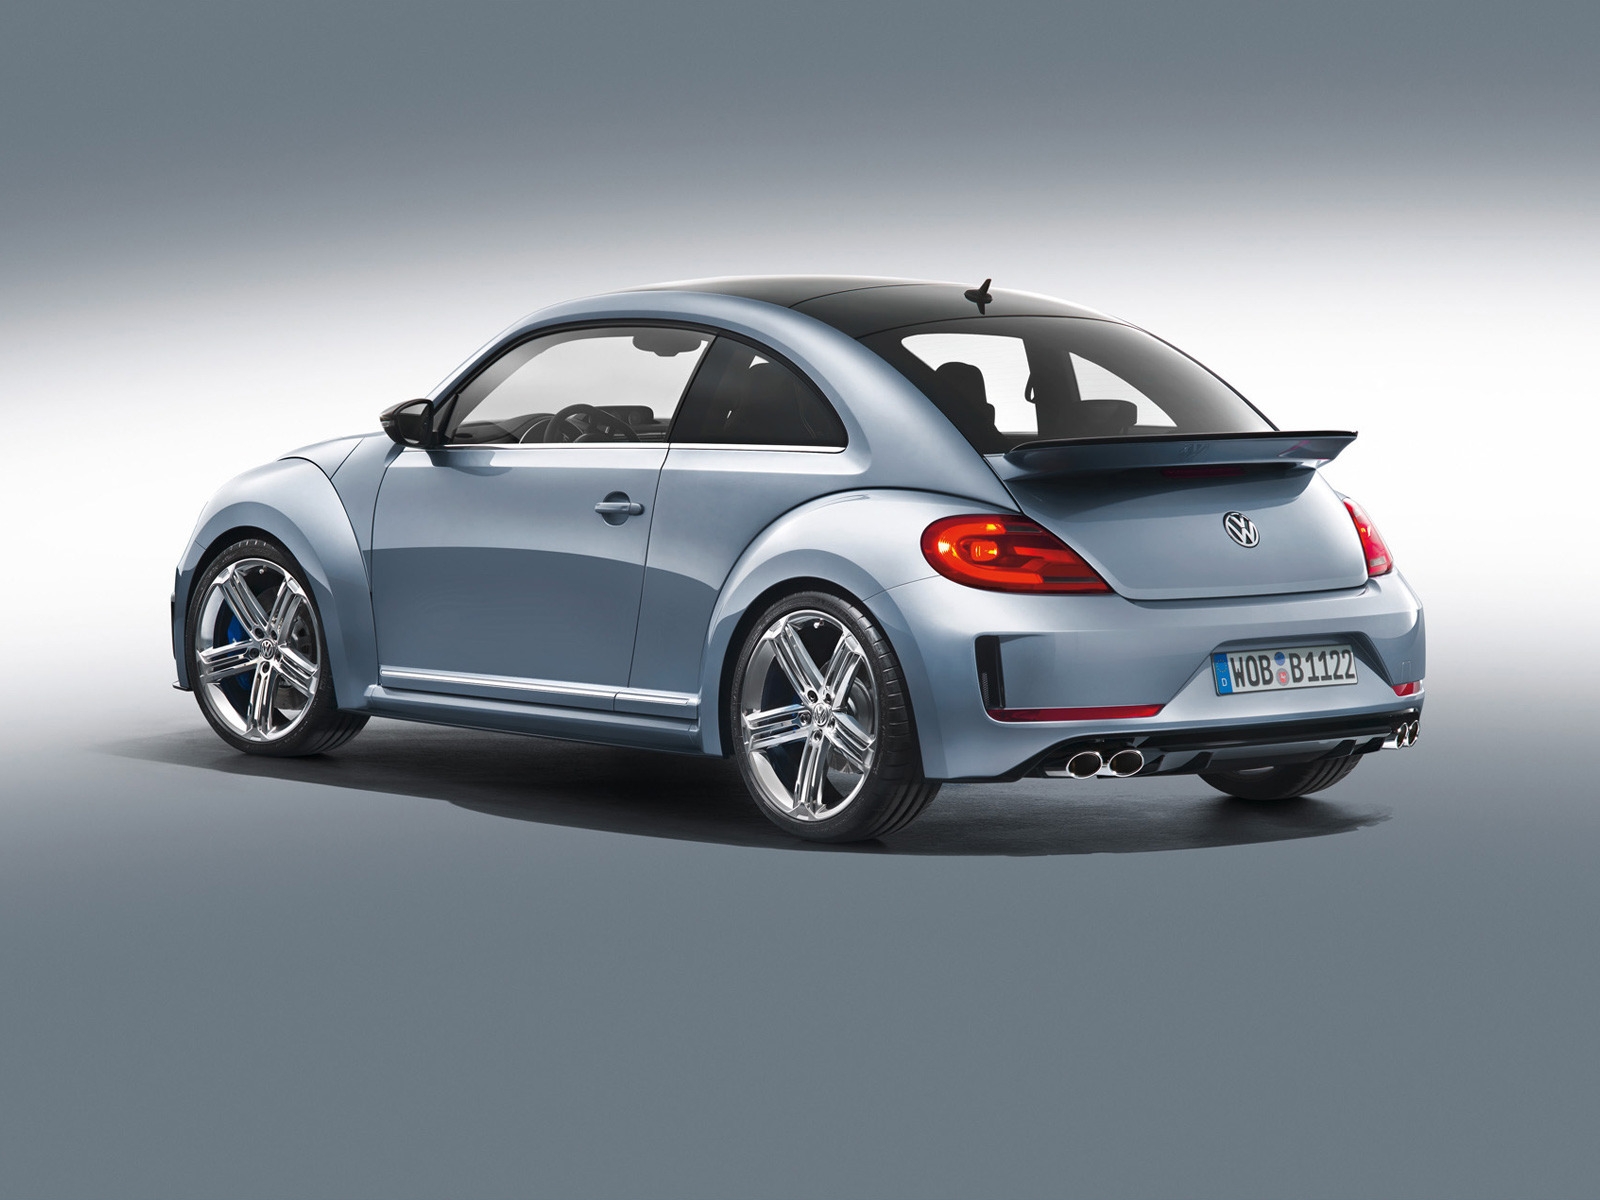 2011 Volkswagen Beetle R Concept Studio for 1600 x 1200 resolution